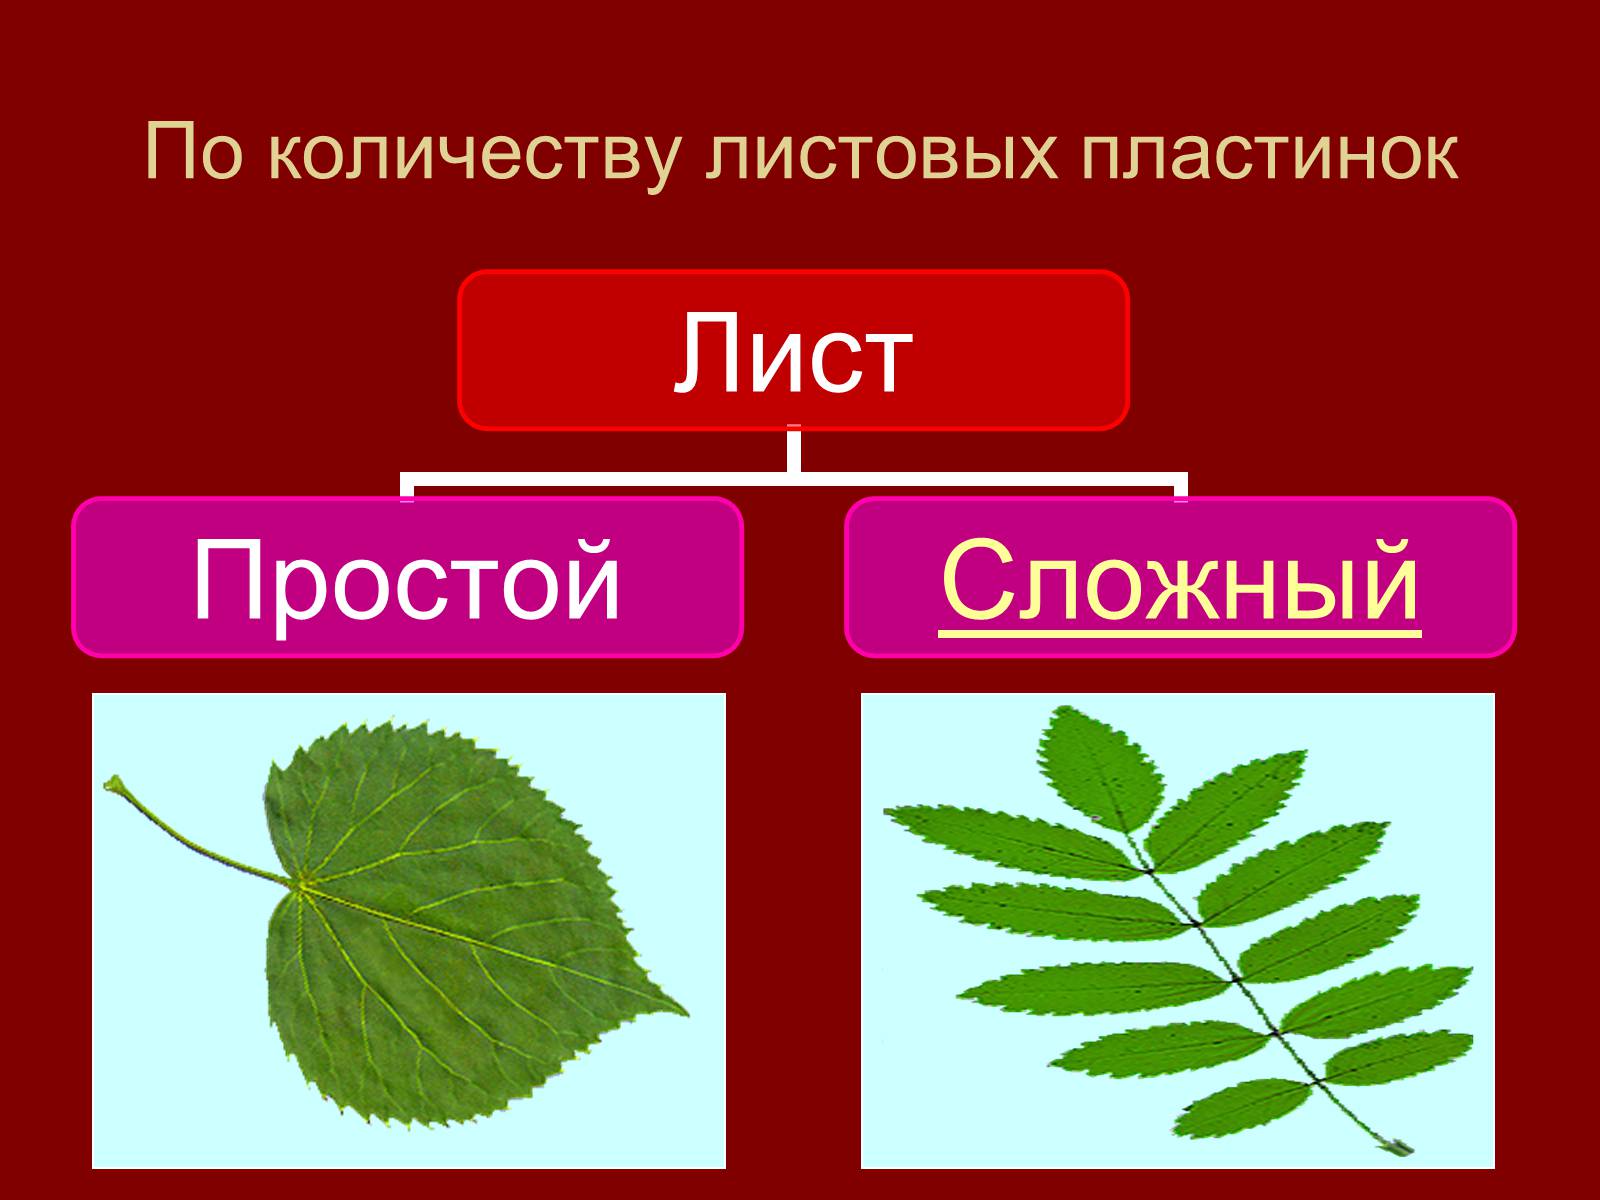 Листья по количеству листовых пластинок